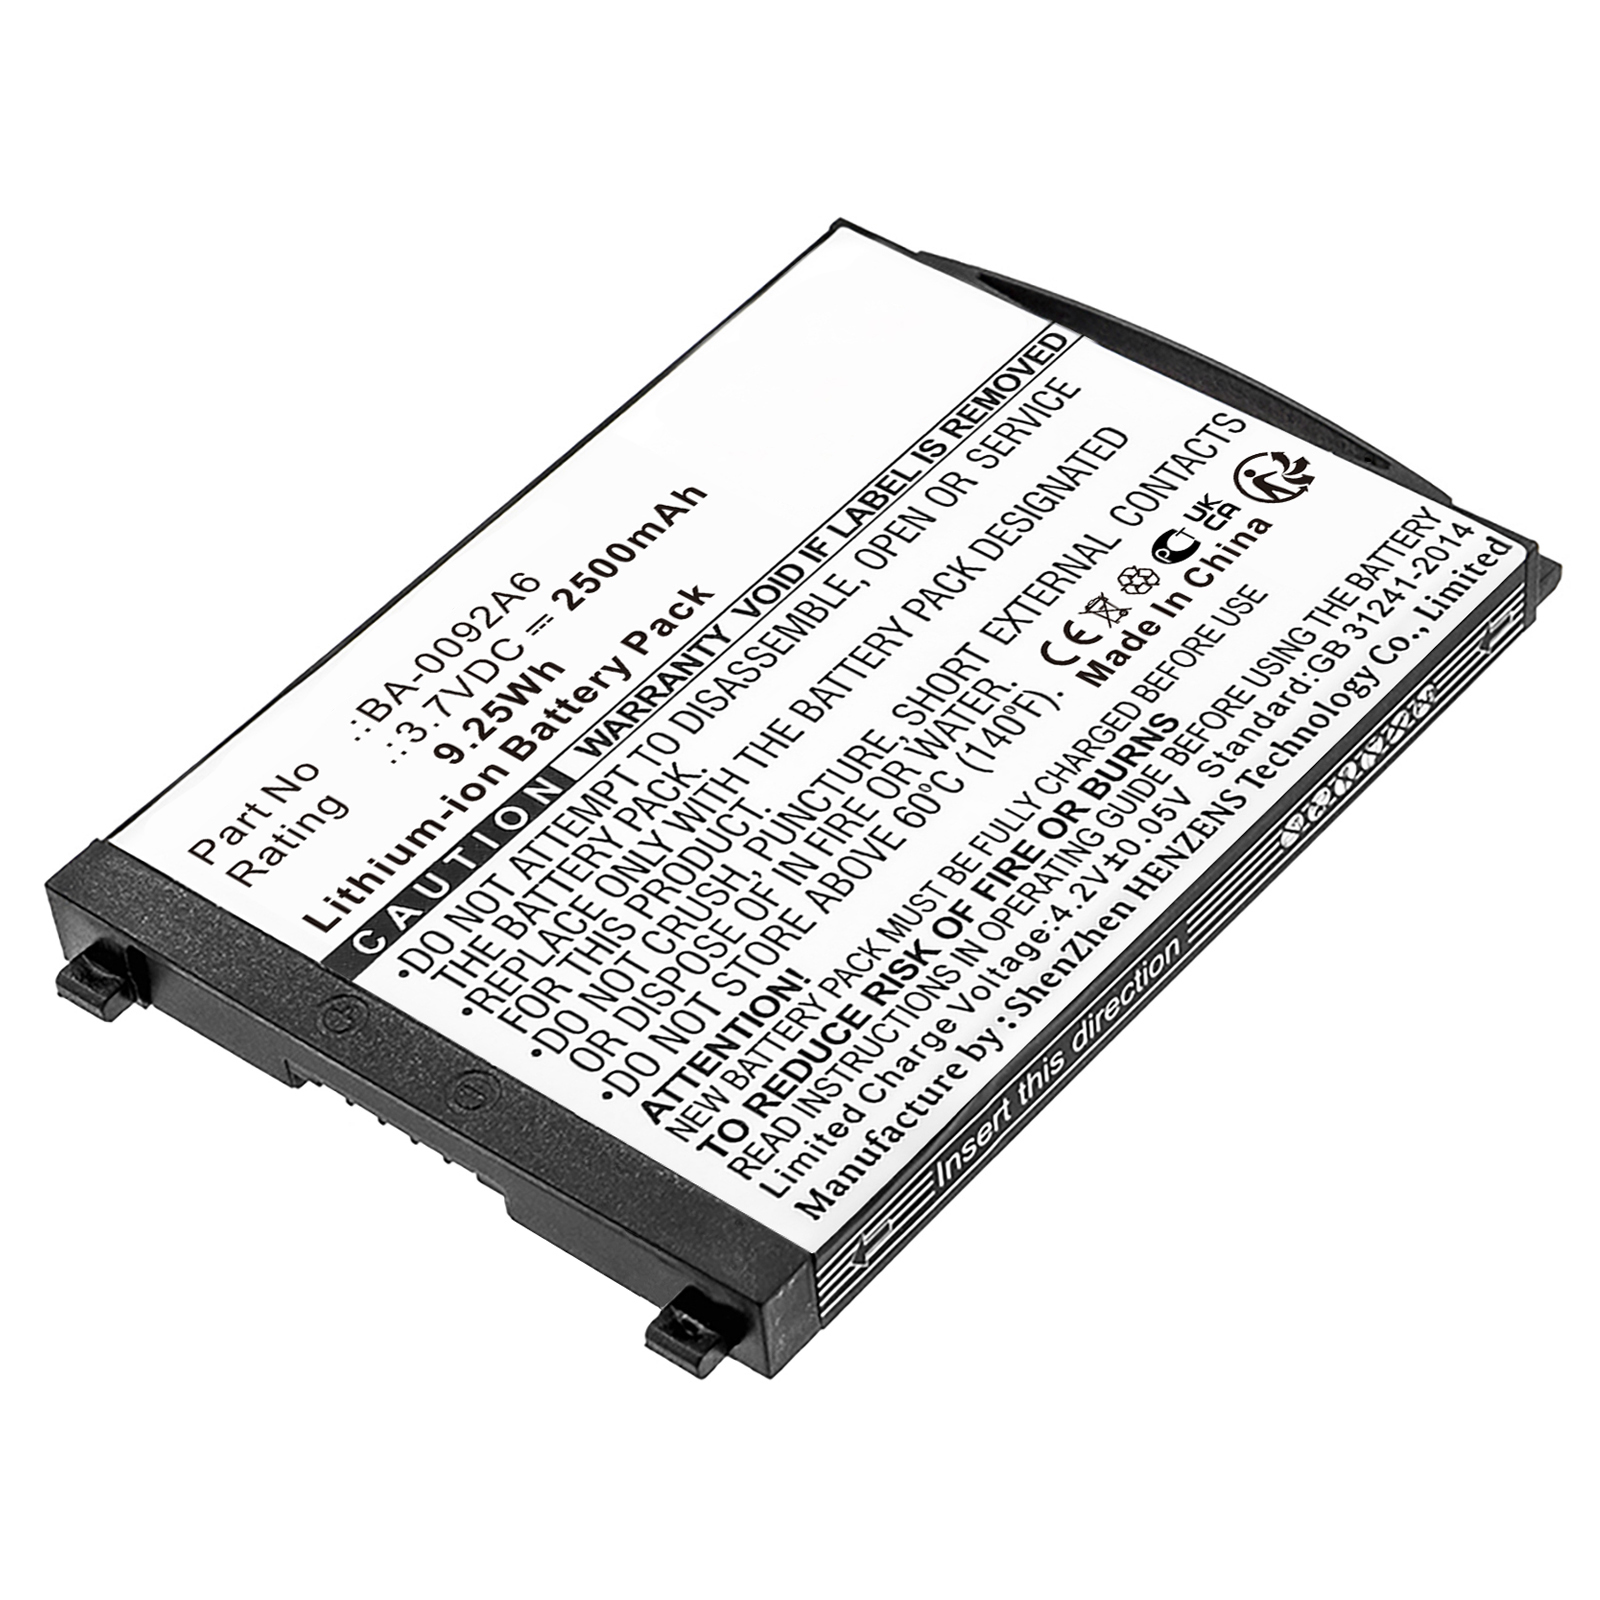 Synergy Digital Barcode Scanner Battery, Compatible with CipherLAB BA-0092A6 Barcode Scanner Battery (Li-ion, 3.7V, 2500mAh)